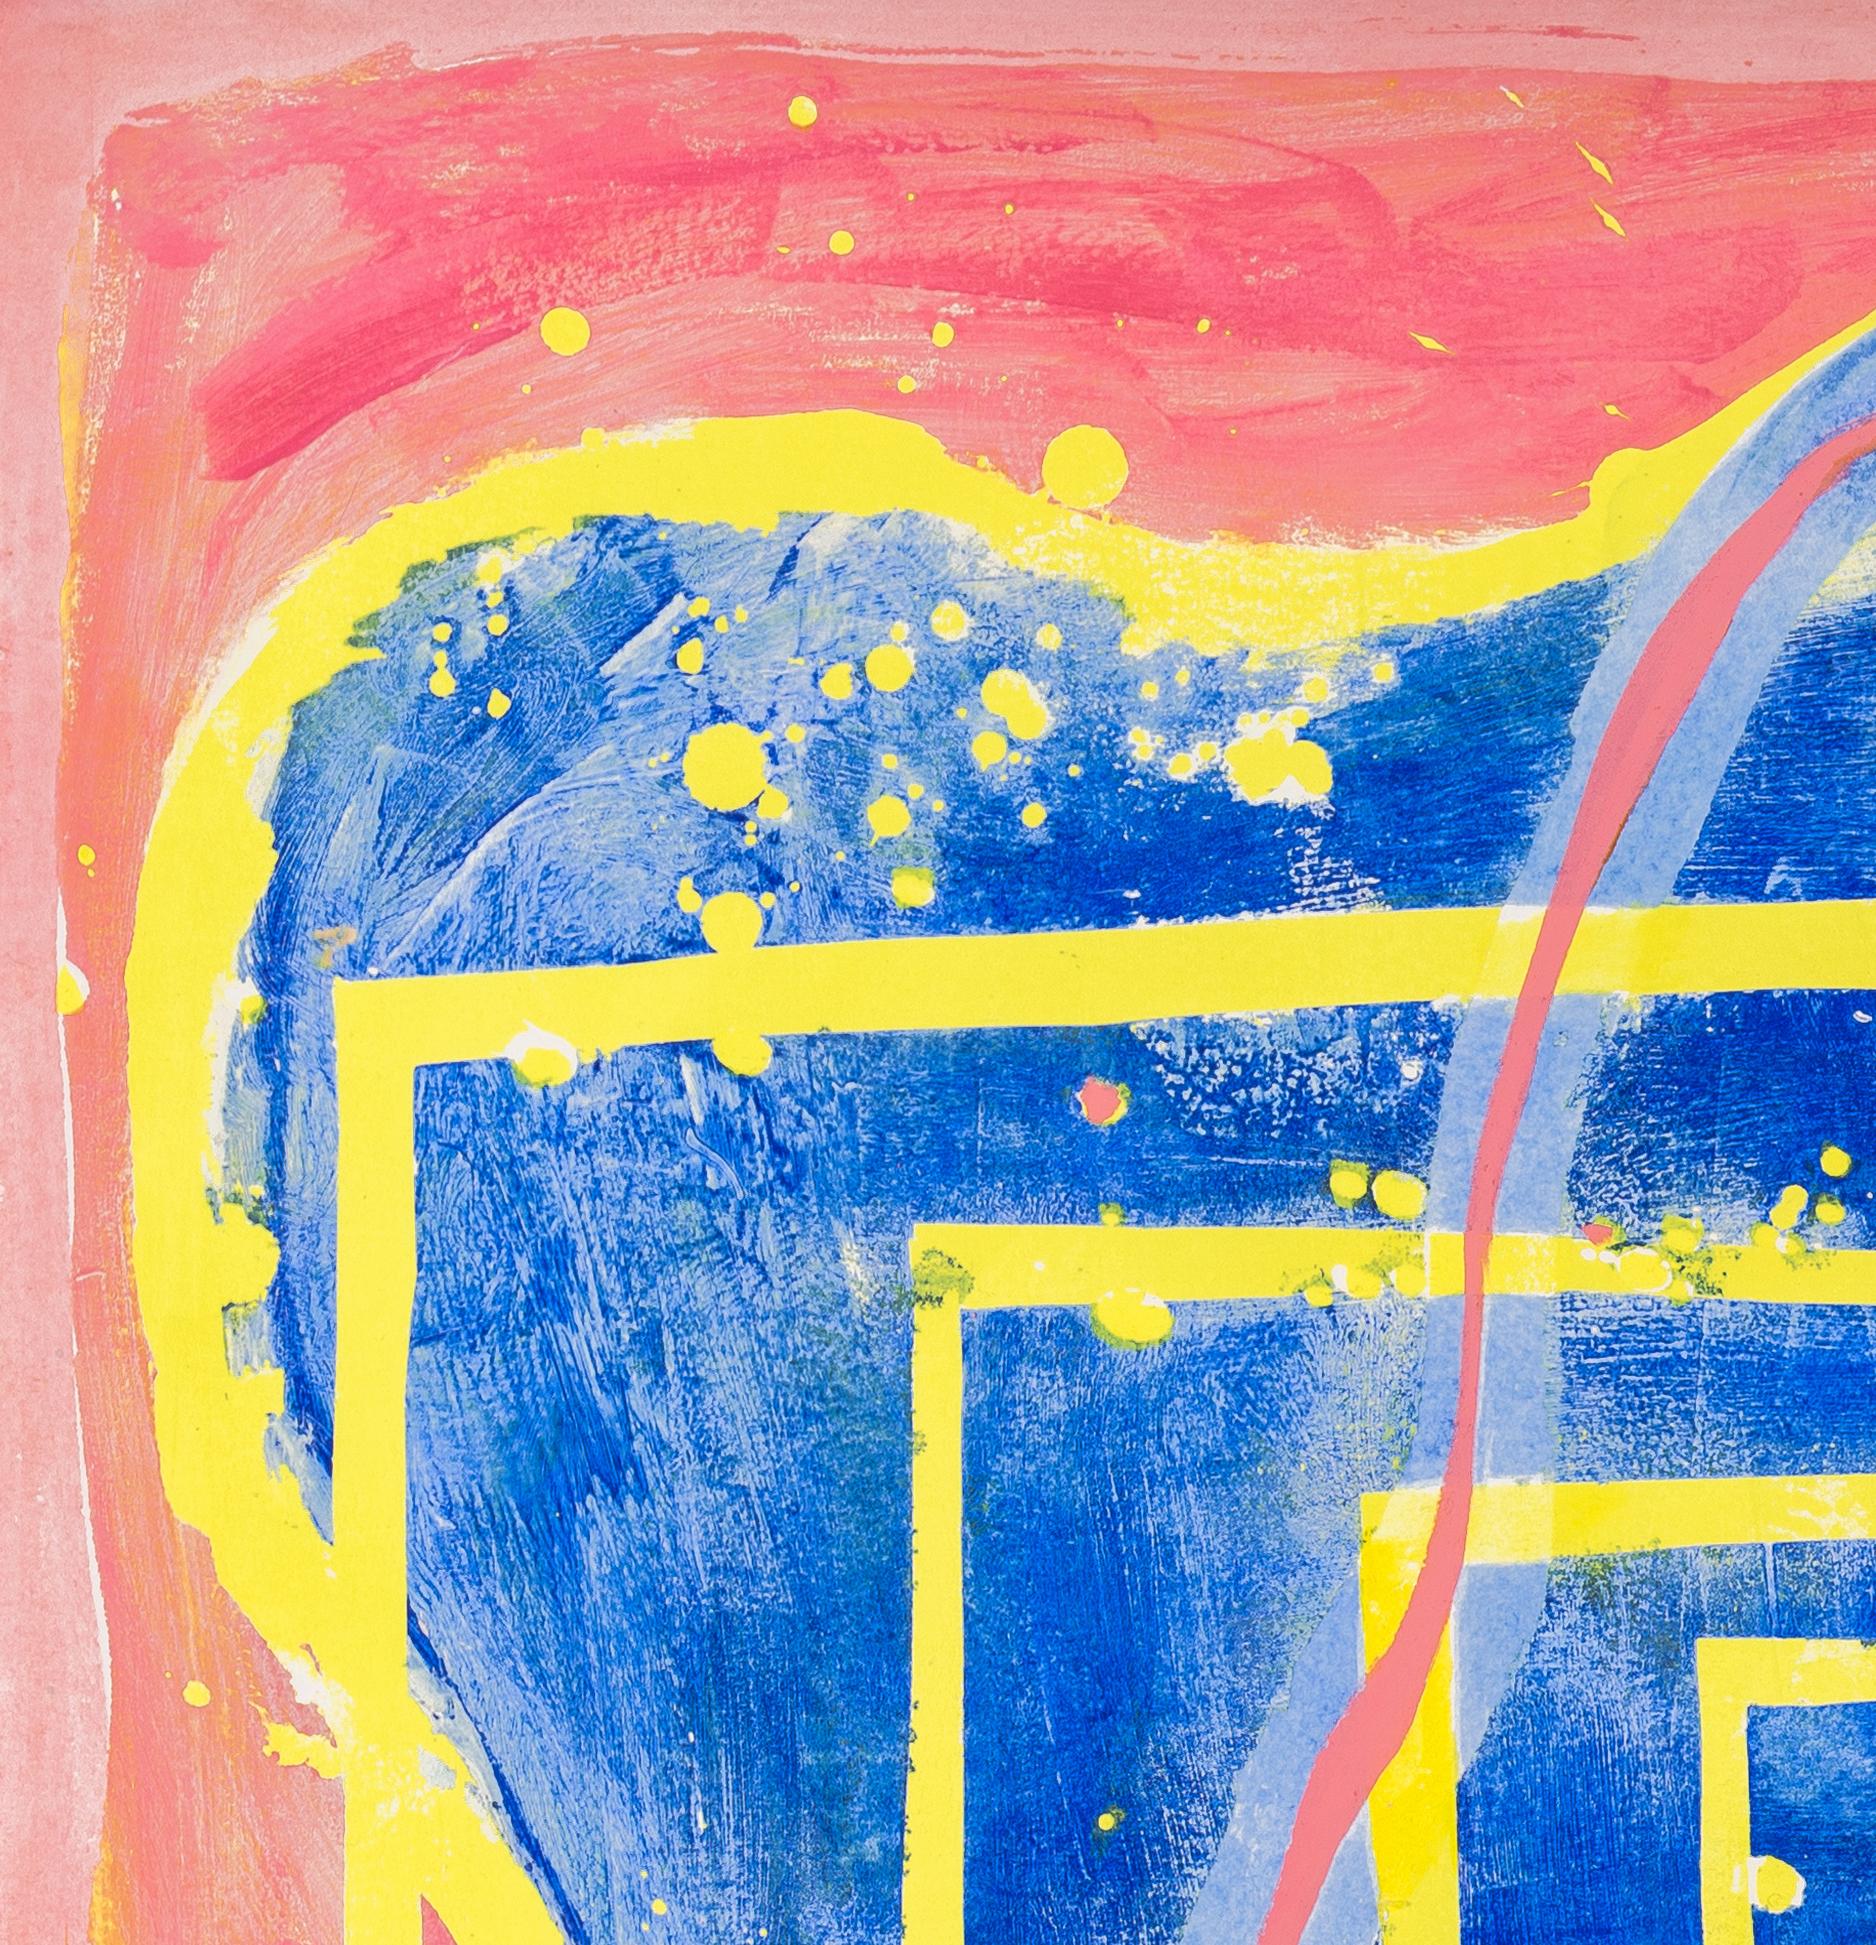 0103: zeitgenössisches, abstraktes, gestisches Gemälde mit gelben, rosa und blauen Linien (Abstrakt), Painting, von Paula Cahill